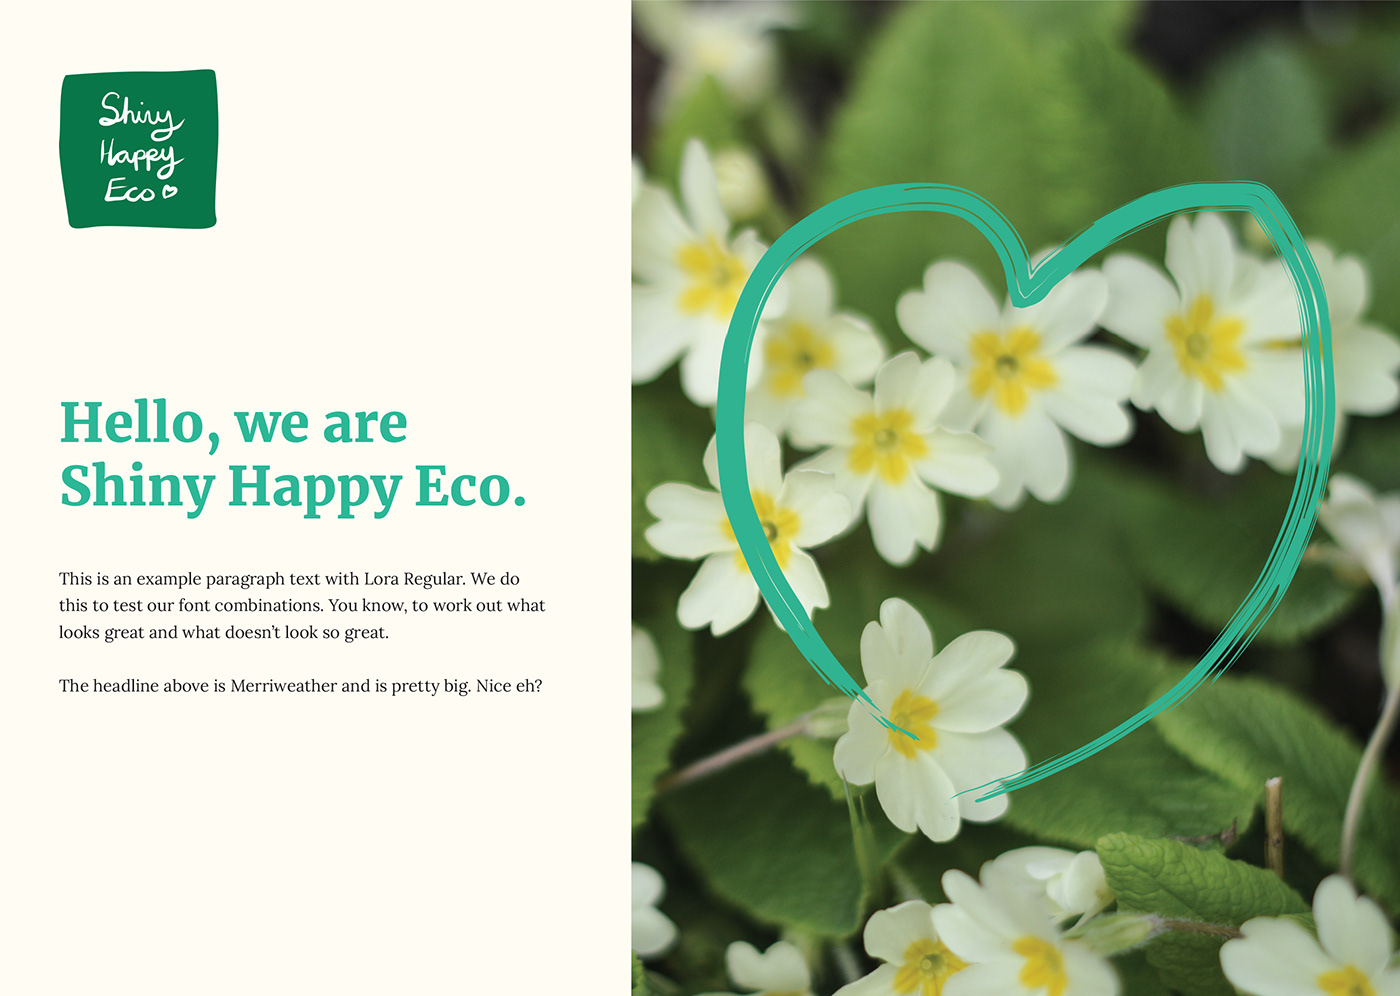 Example branding elements for Shiny Happy Eco branding